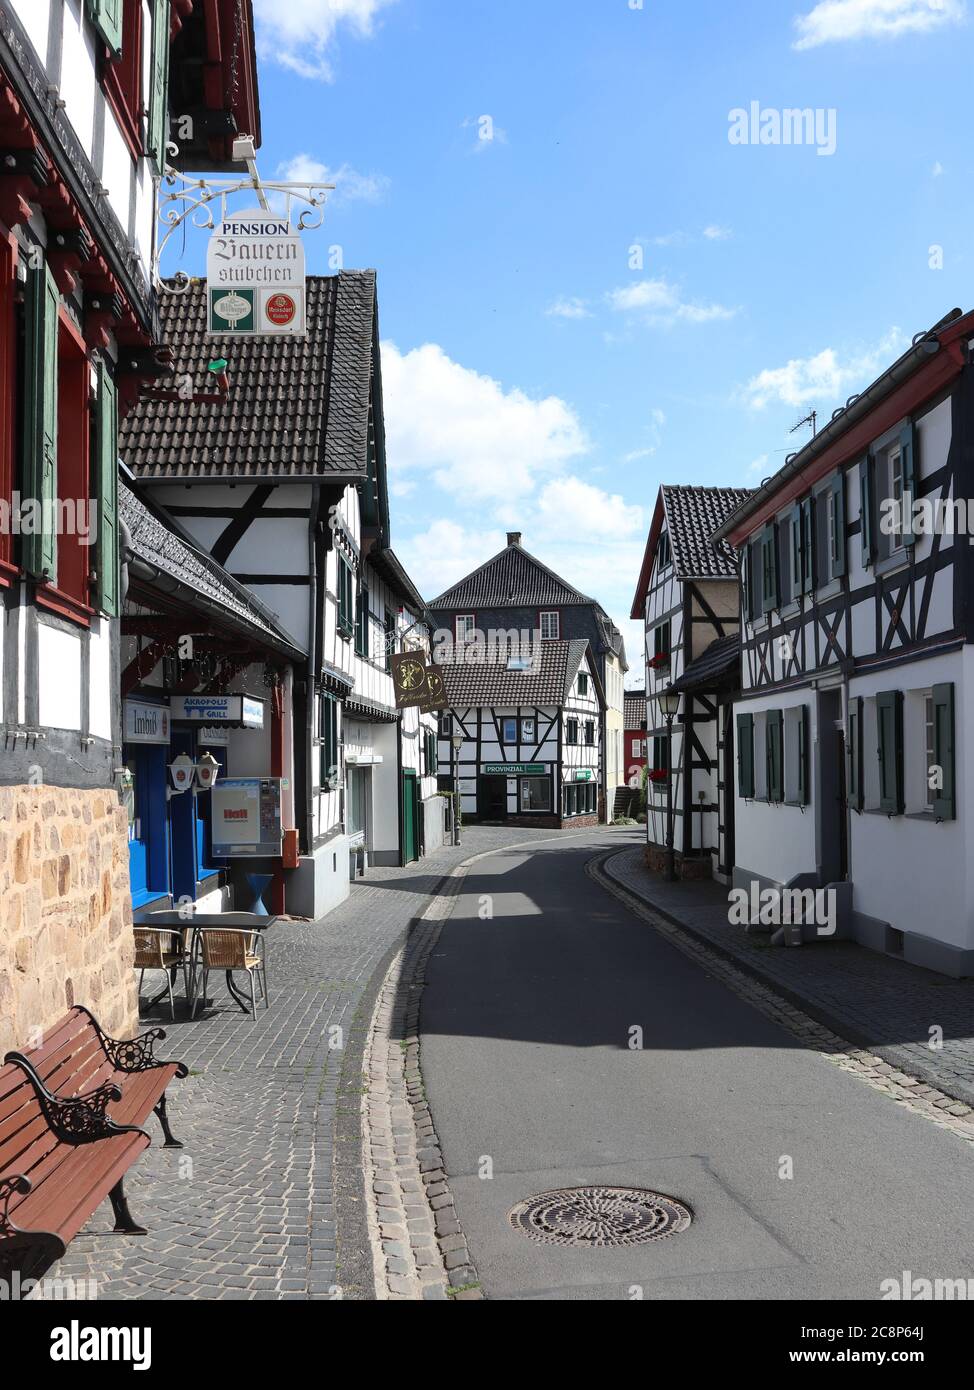 City entrance sign of Billig, suburb of the city Euskirchen, North  Rhine-Westphalia, Germany, Europe Stock Photo - Alamy